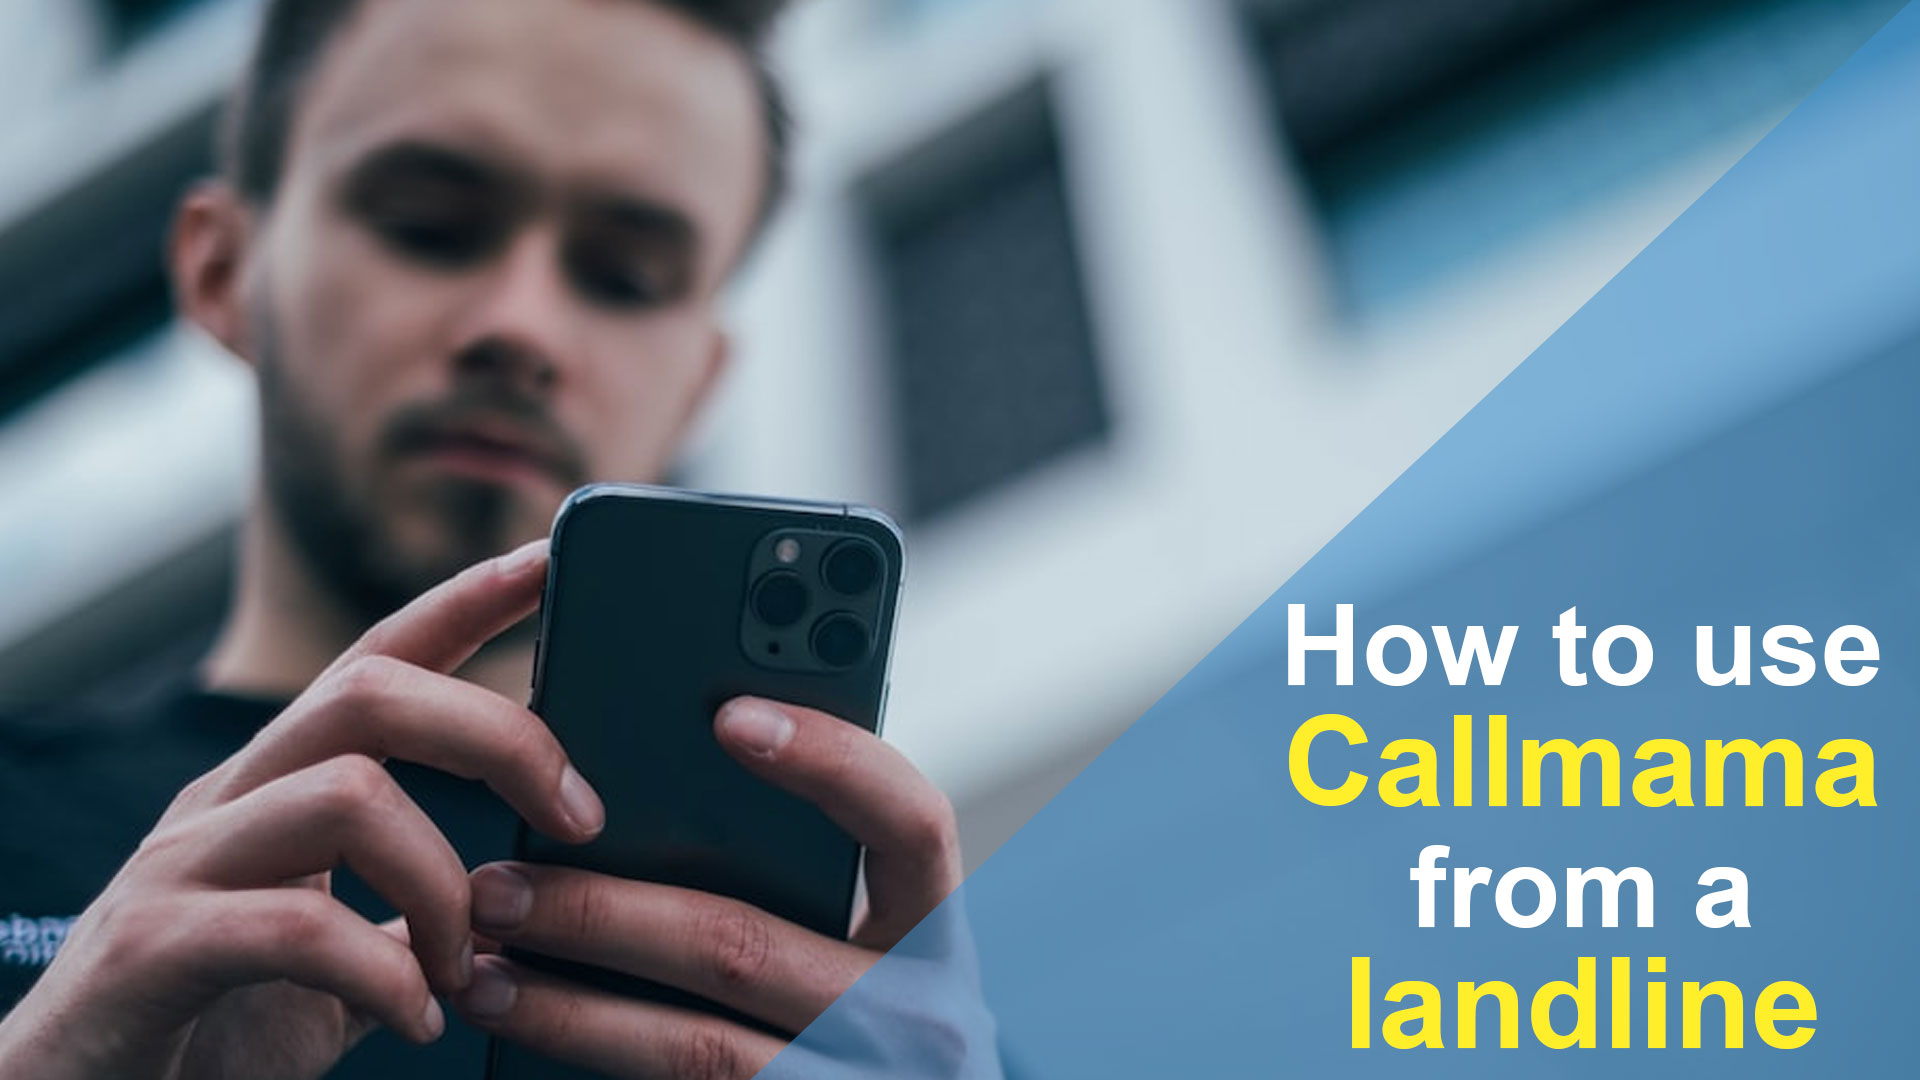 Comment utiliser Callmama depuis un téléphone fixe